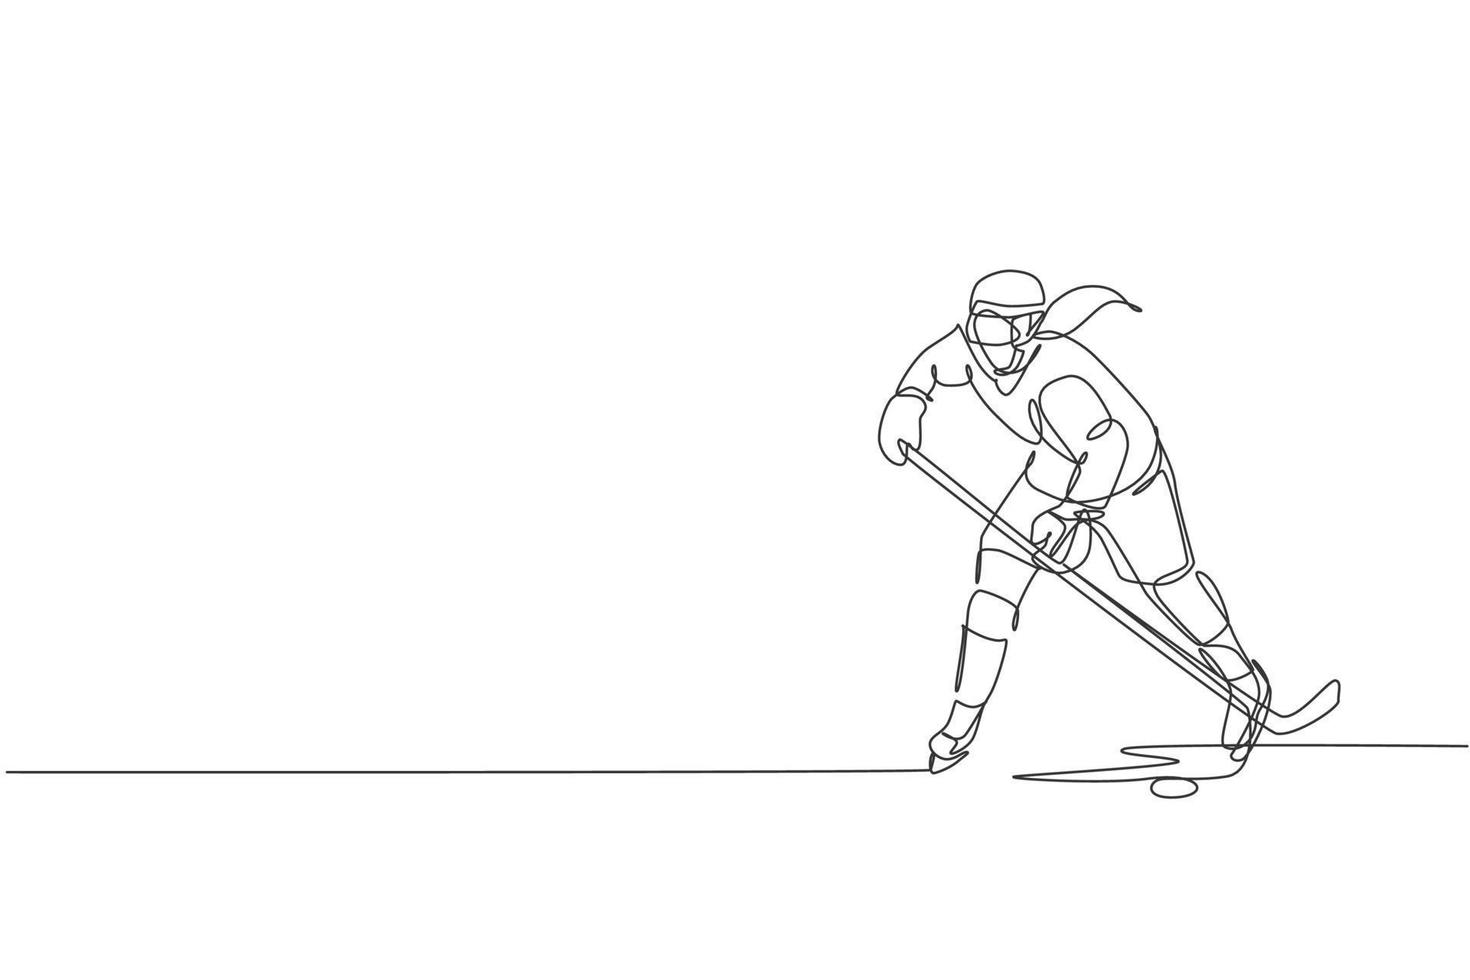 en enda linjeteckning av ung ishockeyspelare i aktion för att spela ett konkurrenskraftigt spel på isbanan, vektorillustration. sport turnering koncept. modern kontinuerlig linjeritningsdesign vektor